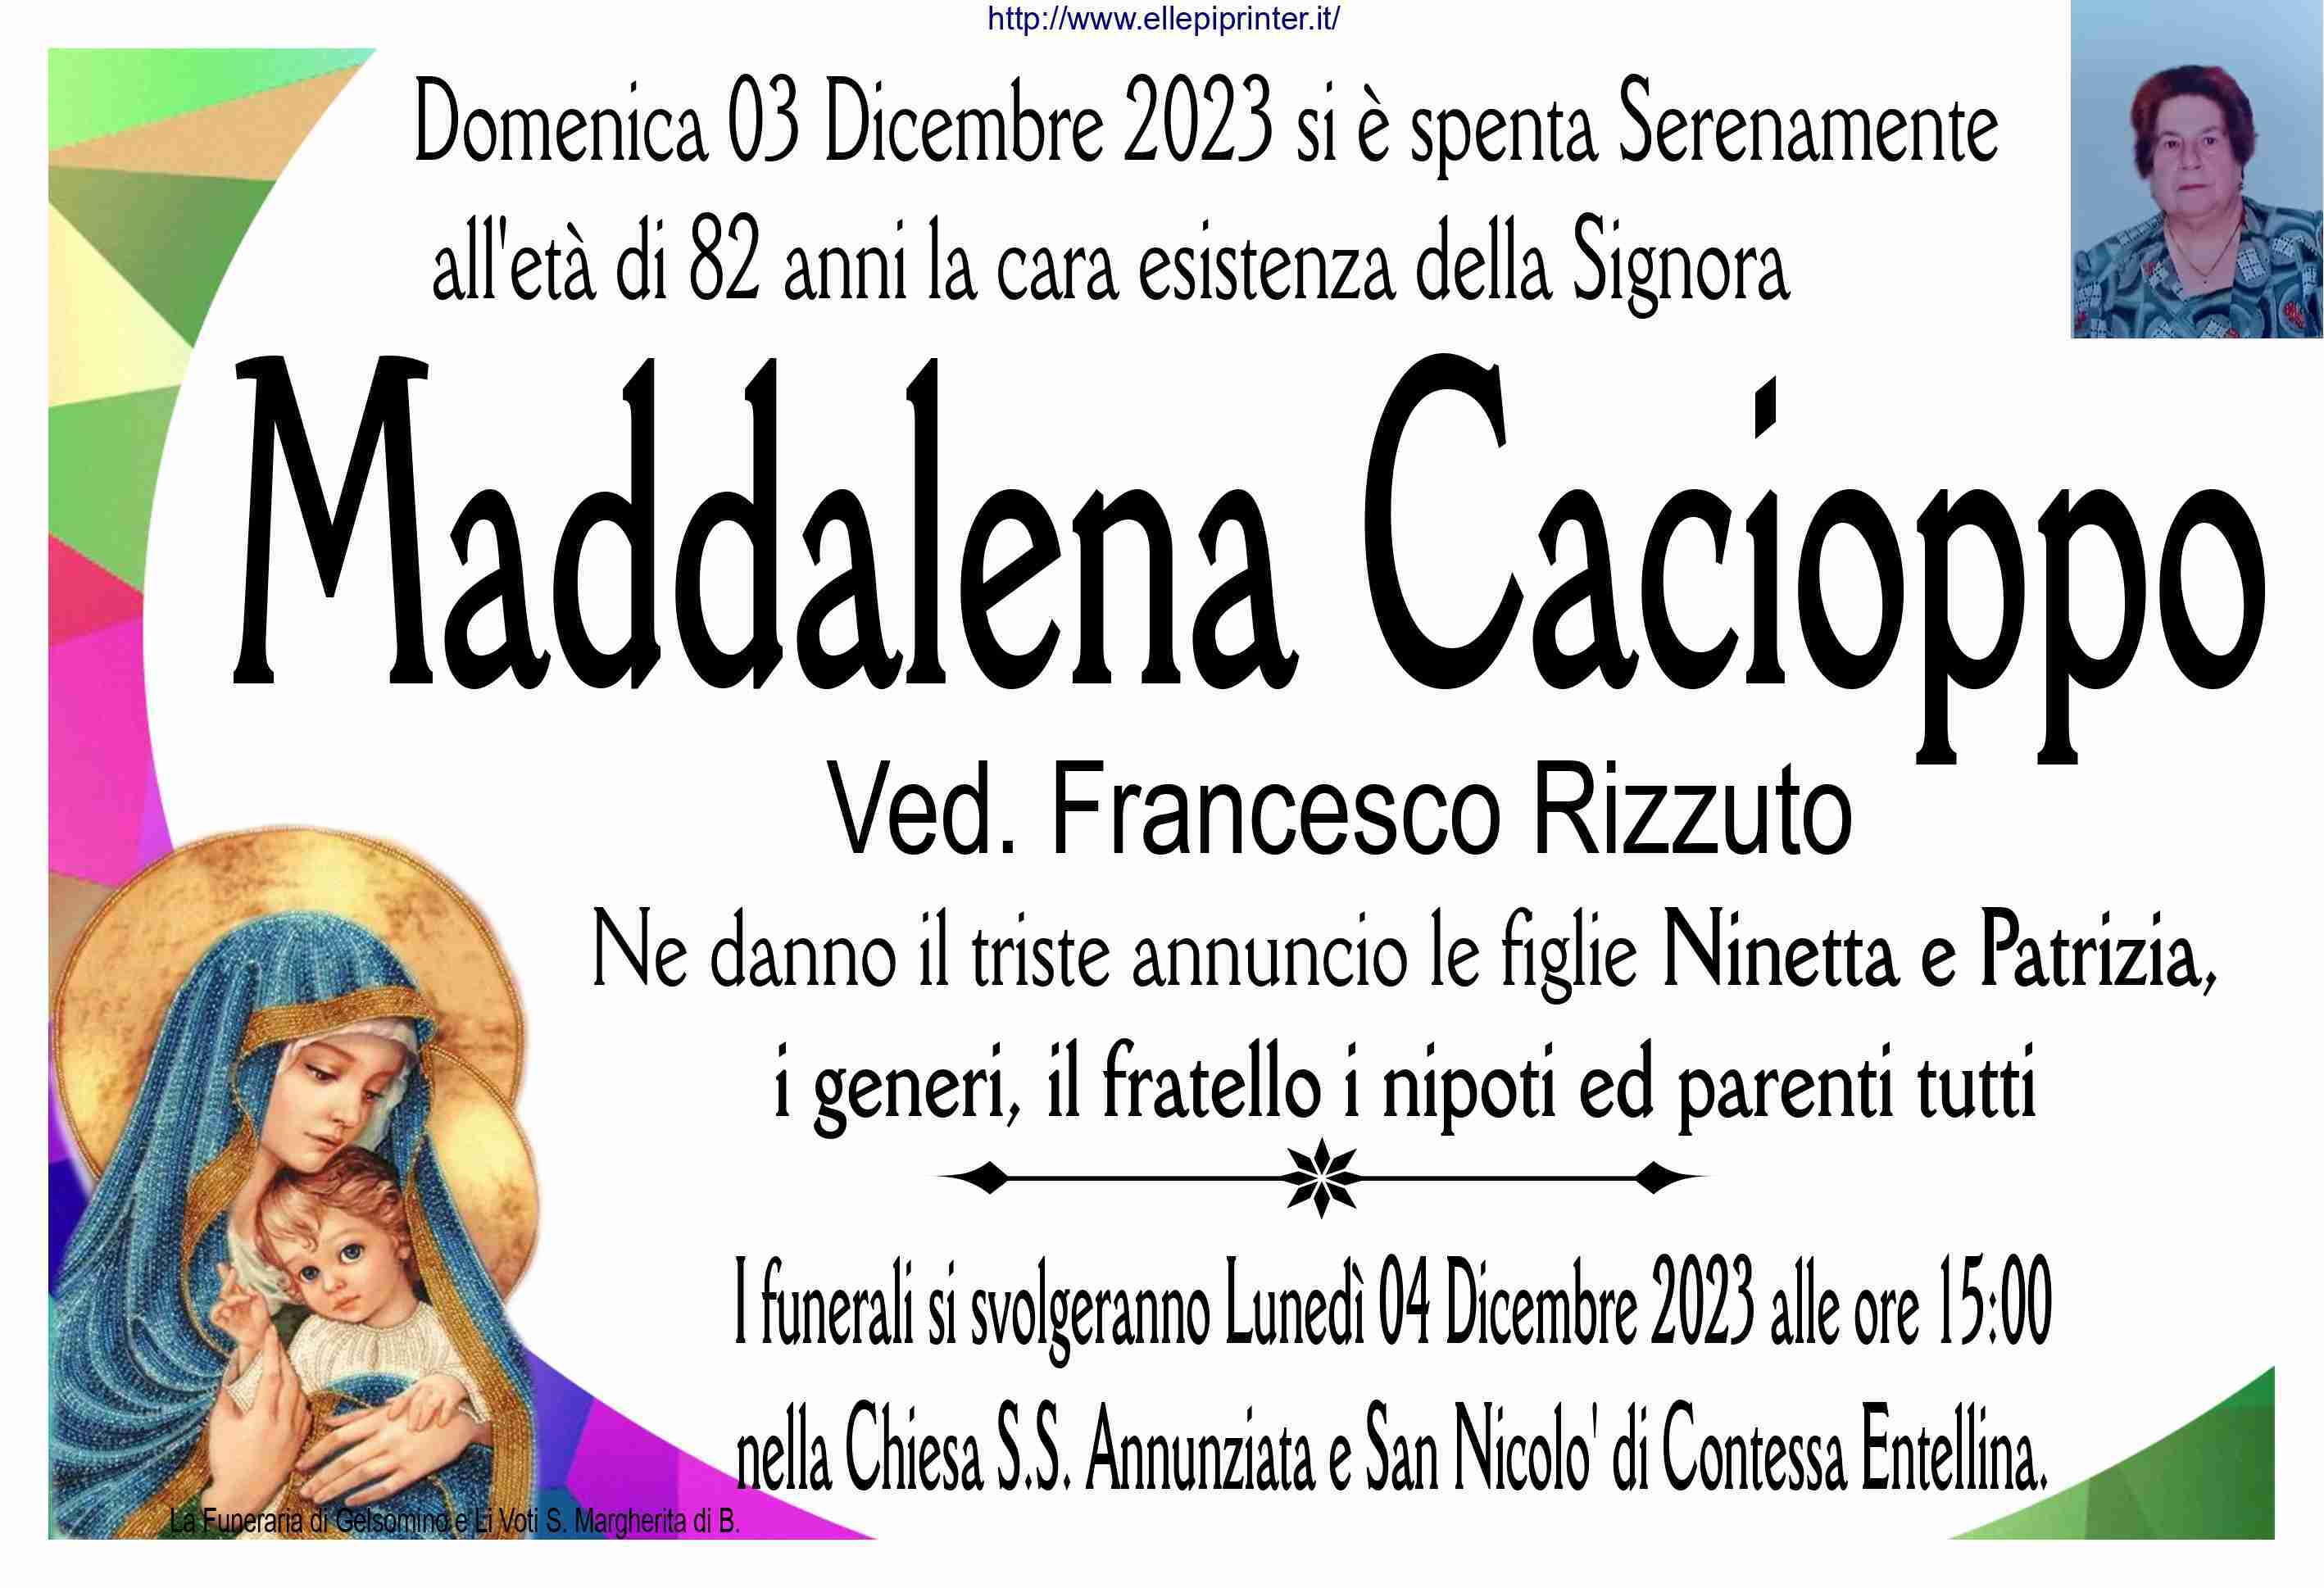 Maddalena Cacioppo